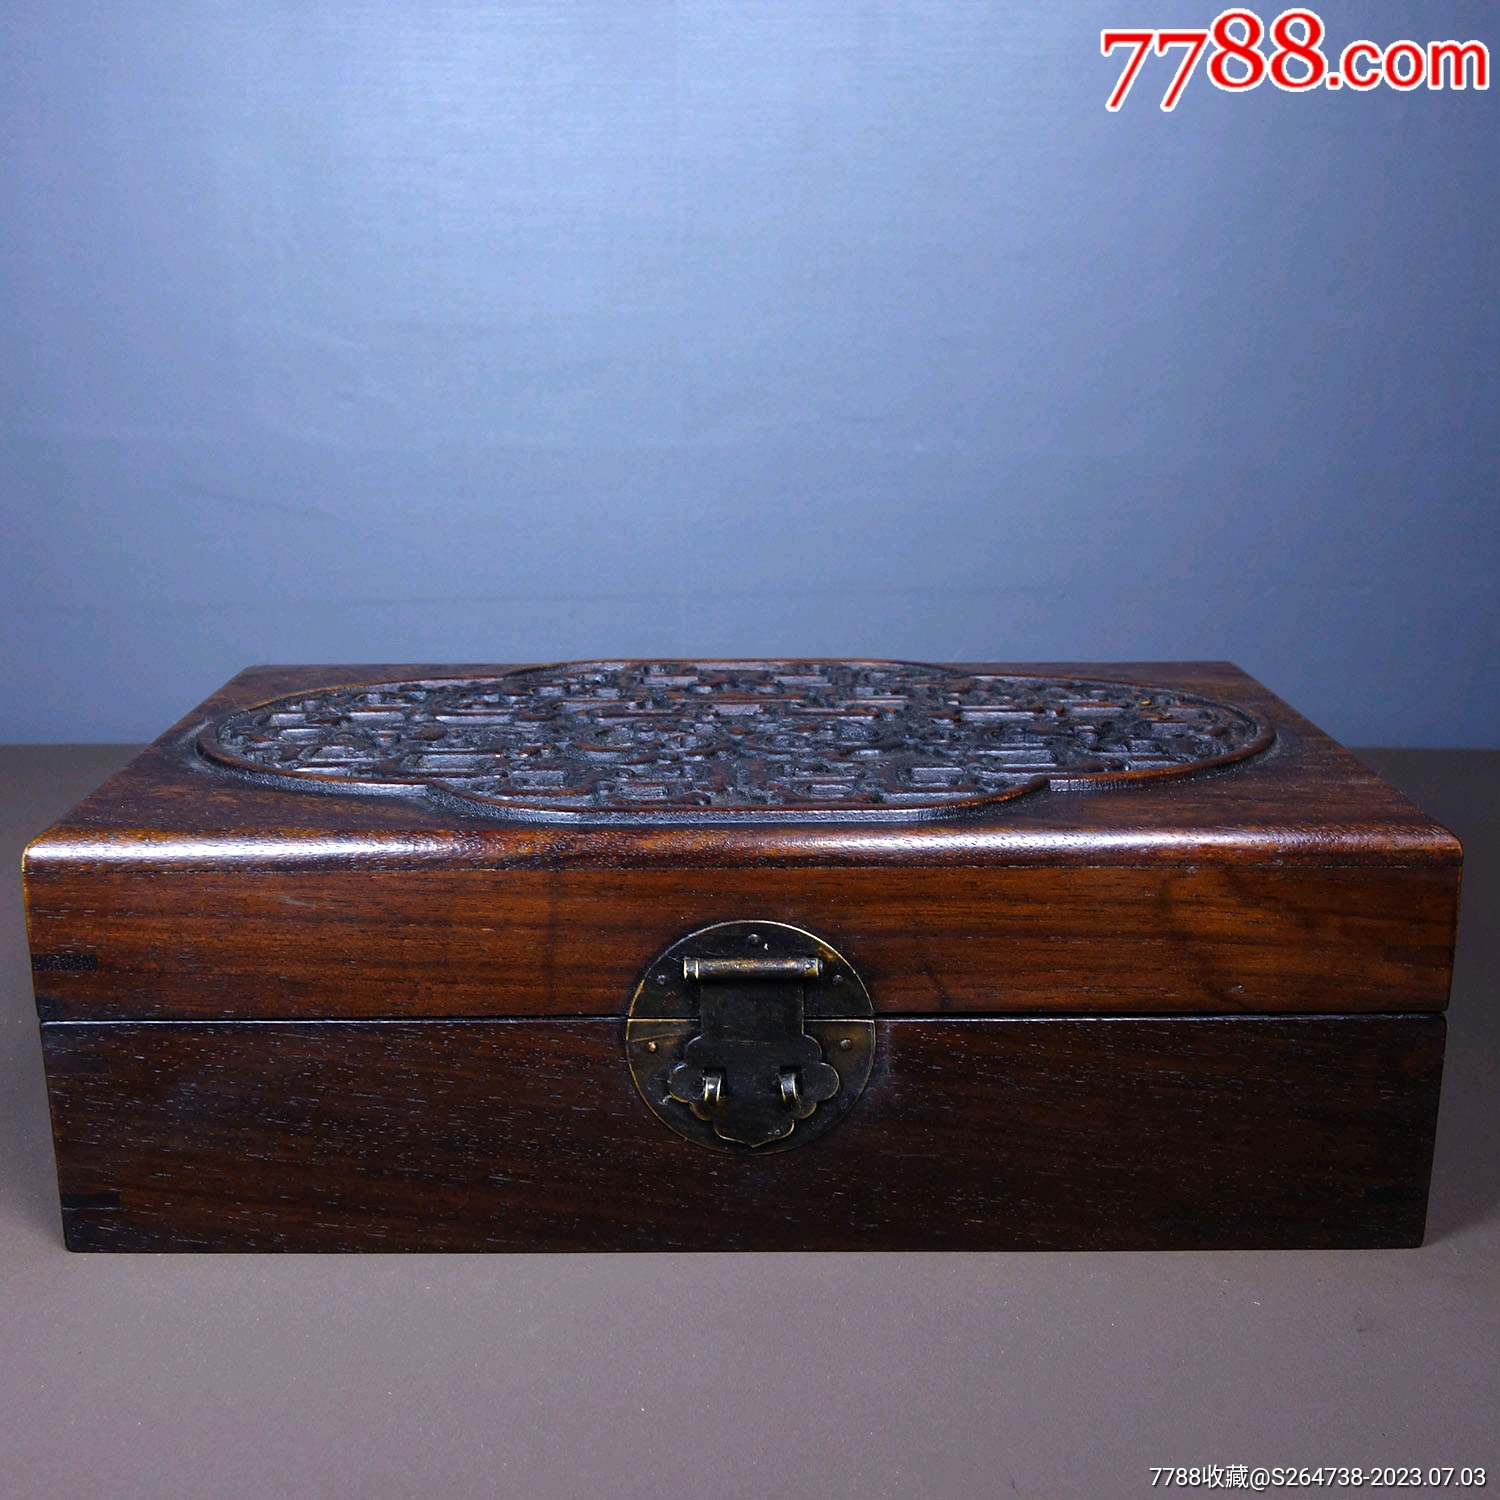 旧藏花梨木浮雕盒子首饰盒尺寸长28cm宽26cm高9cm重